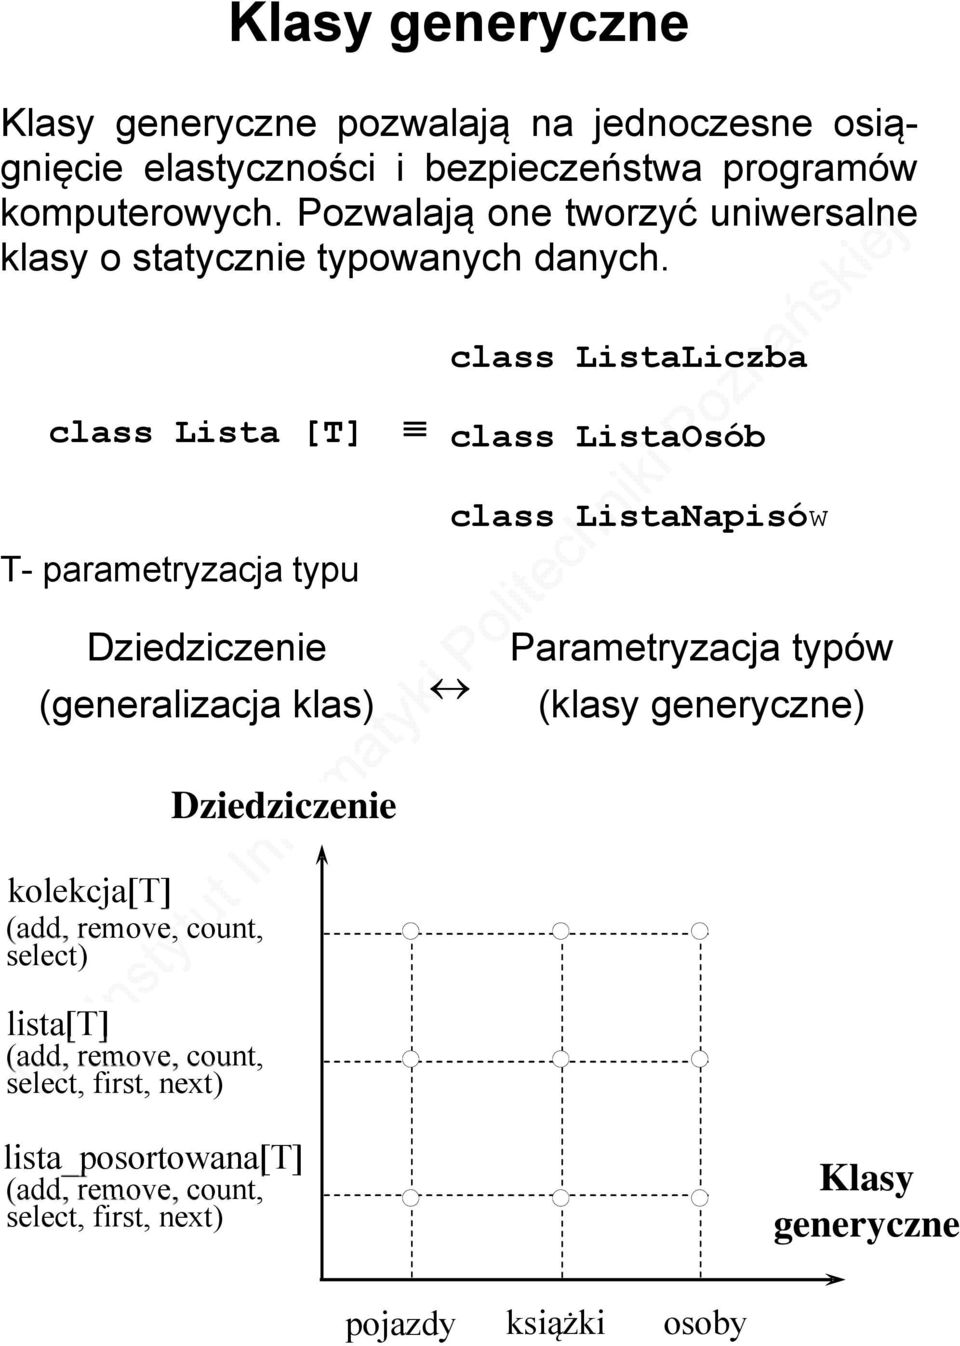 class ListaLiczba class Lista [T] T- parametryzacja typu class ListaOsób class ListaNapisów Dziedziczenie (generalizacja klas) kolekcja[t]